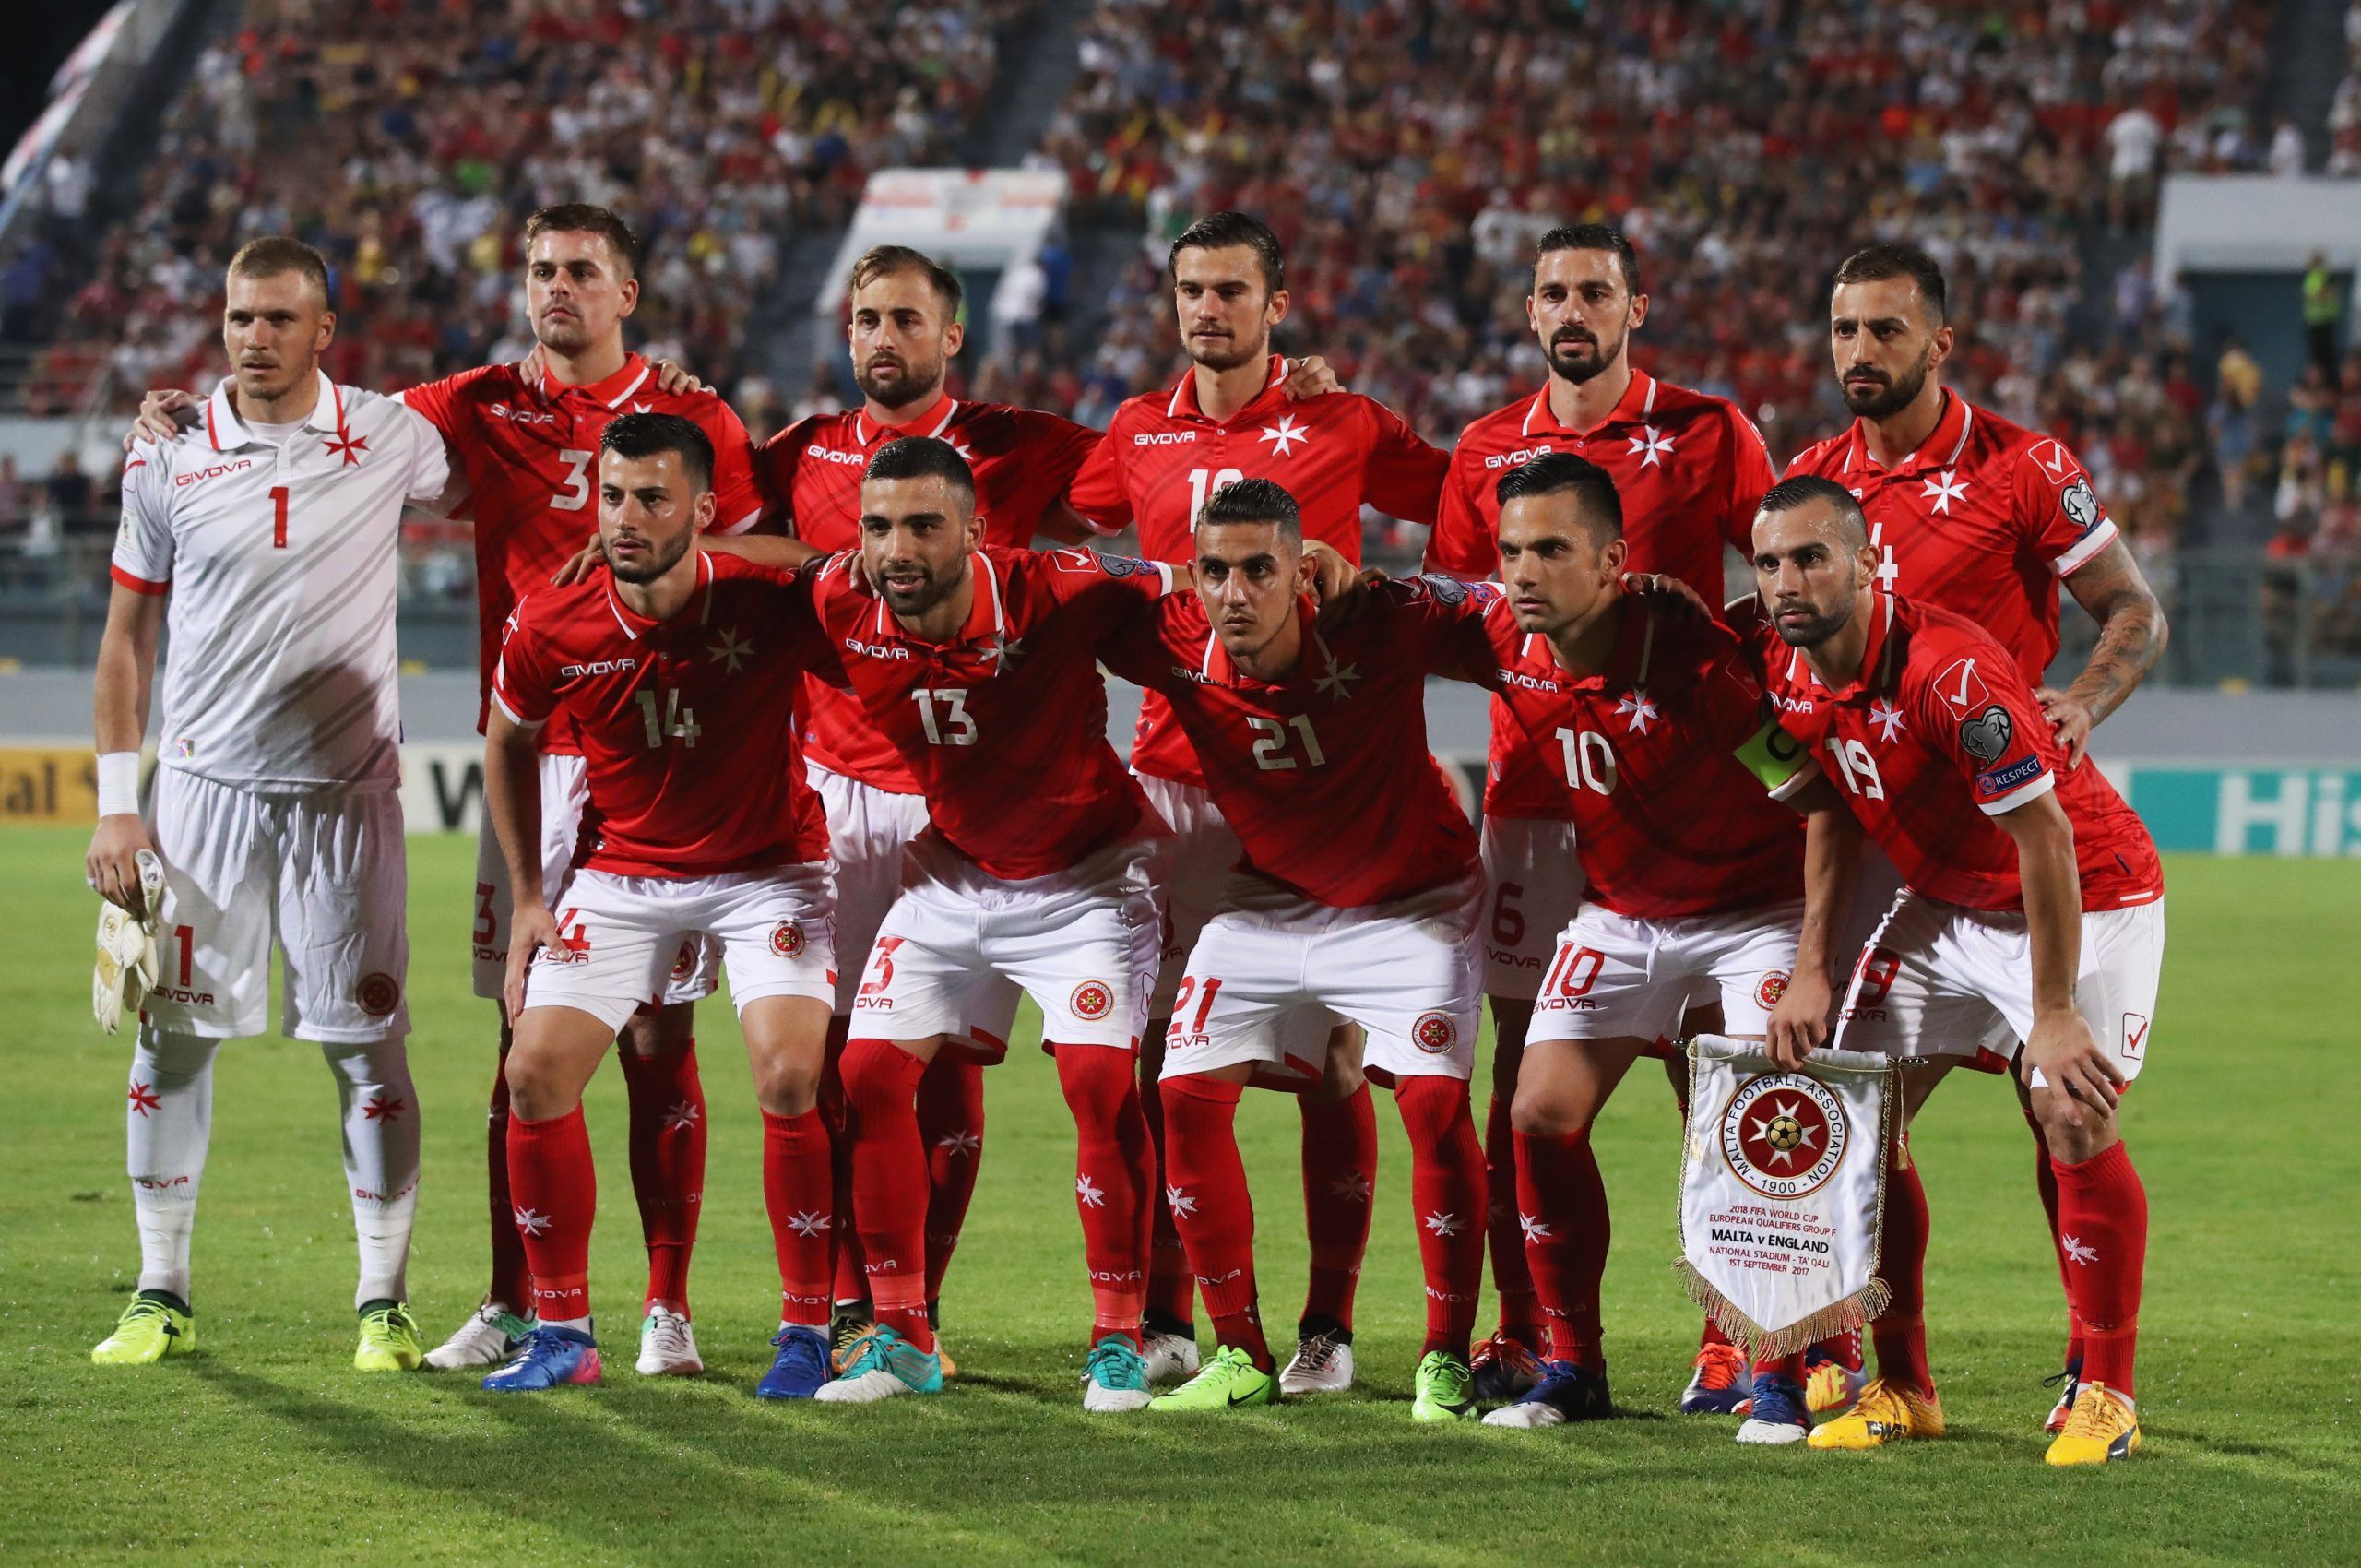 Сан-Марино — Мальта прогноз 5 июня 2022: ставки и коэффициенты на матч Лиги наций УЕФА